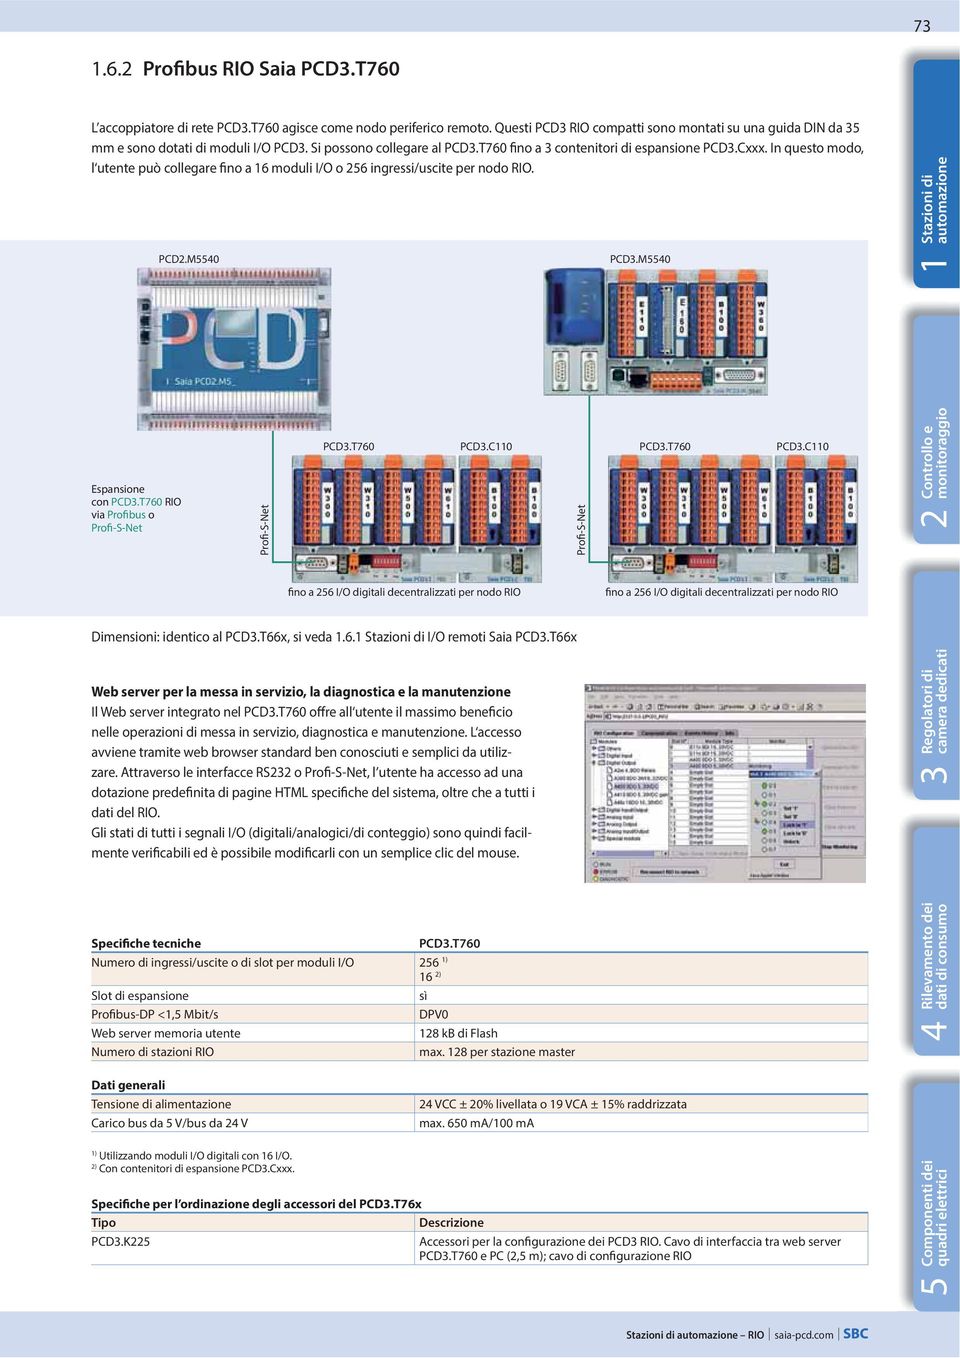 M554 PCD3.M554 Stazioni spansione con PCD3.T76 RIO via Profibus o Profi-S-Net Web server per la messa in servizio, la diagnostica e la manutenzione Il Web server integrato nel PCD3.